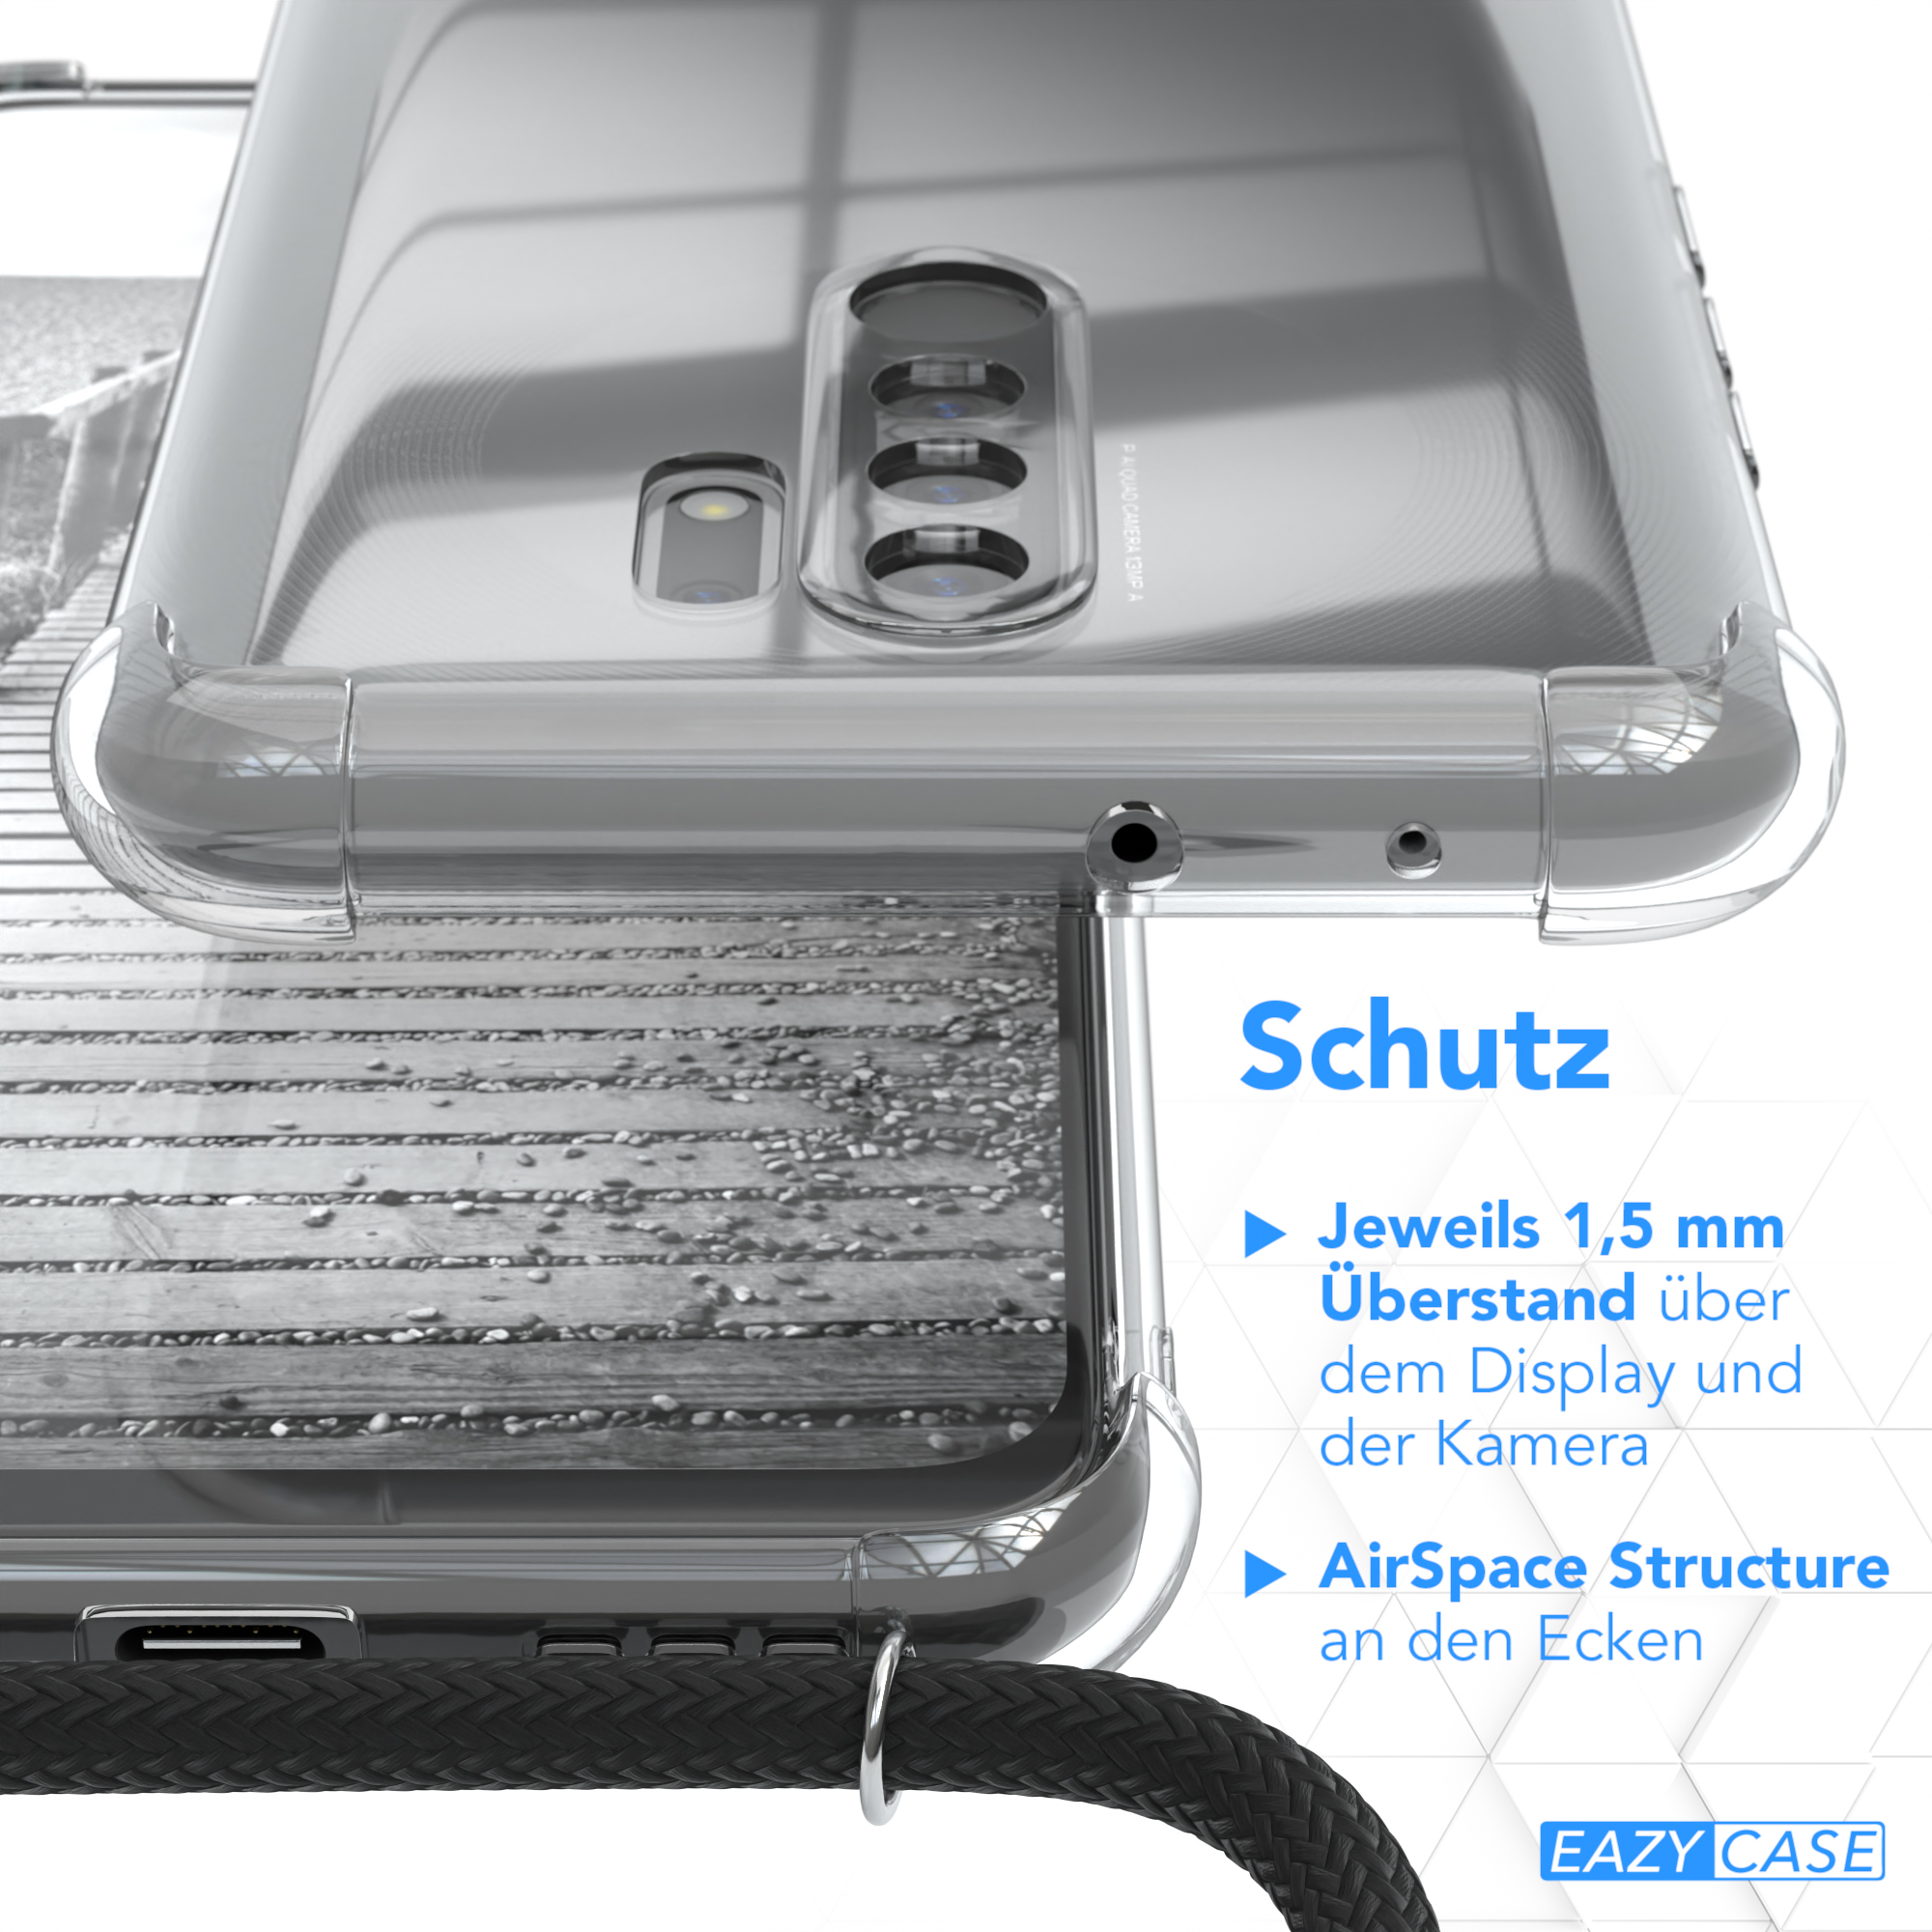 Metall 9 CASE Prime, Redmi Grau + Handykette Anthrazit Schwarz, extra 9 Redmi Xiaomi, Umhängetasche, Kordel / EAZY